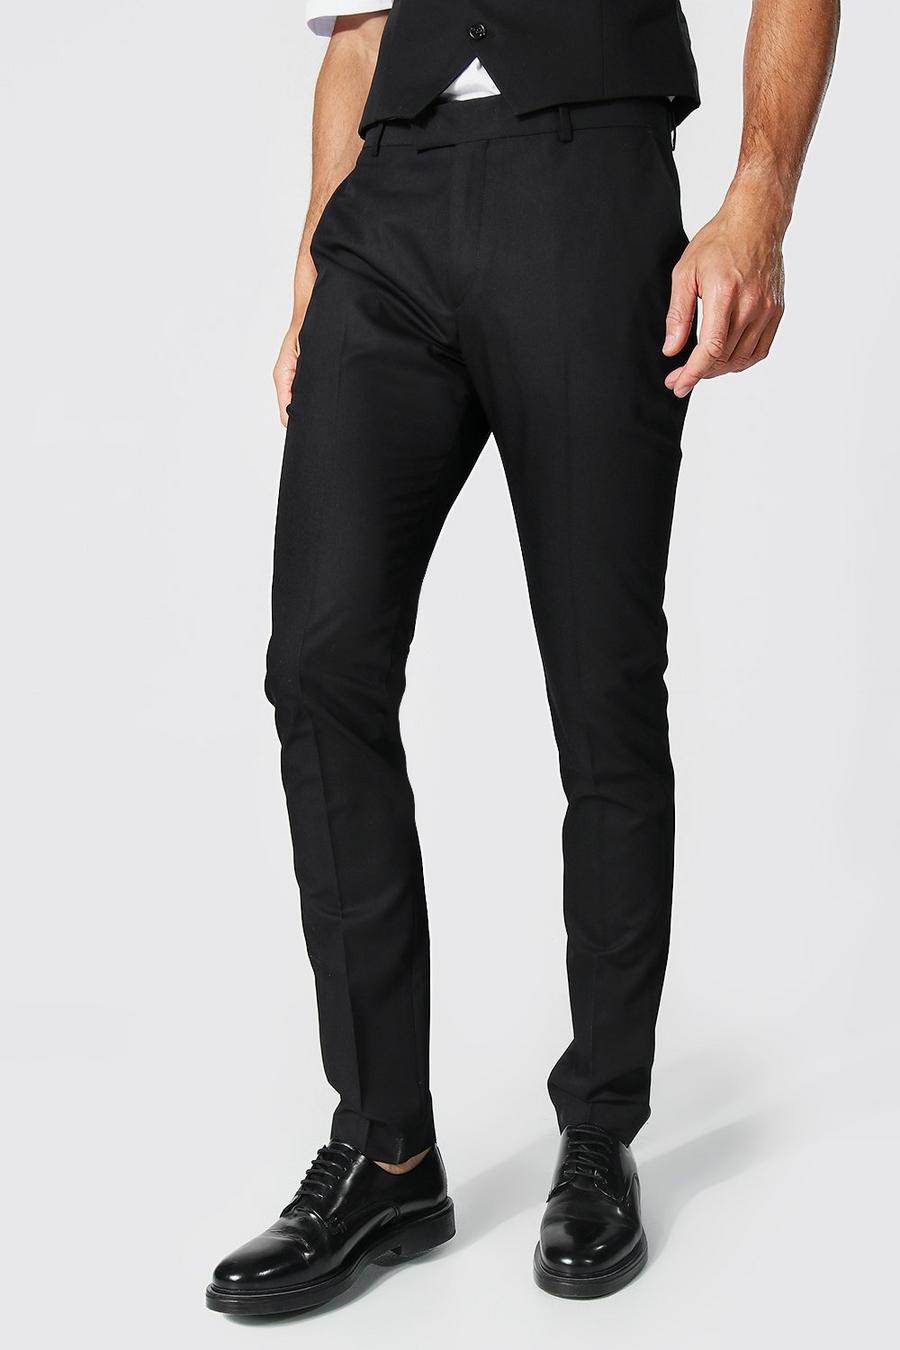 שחור nero מכנסי סקיני אלגנטיים לגברים גבוהים